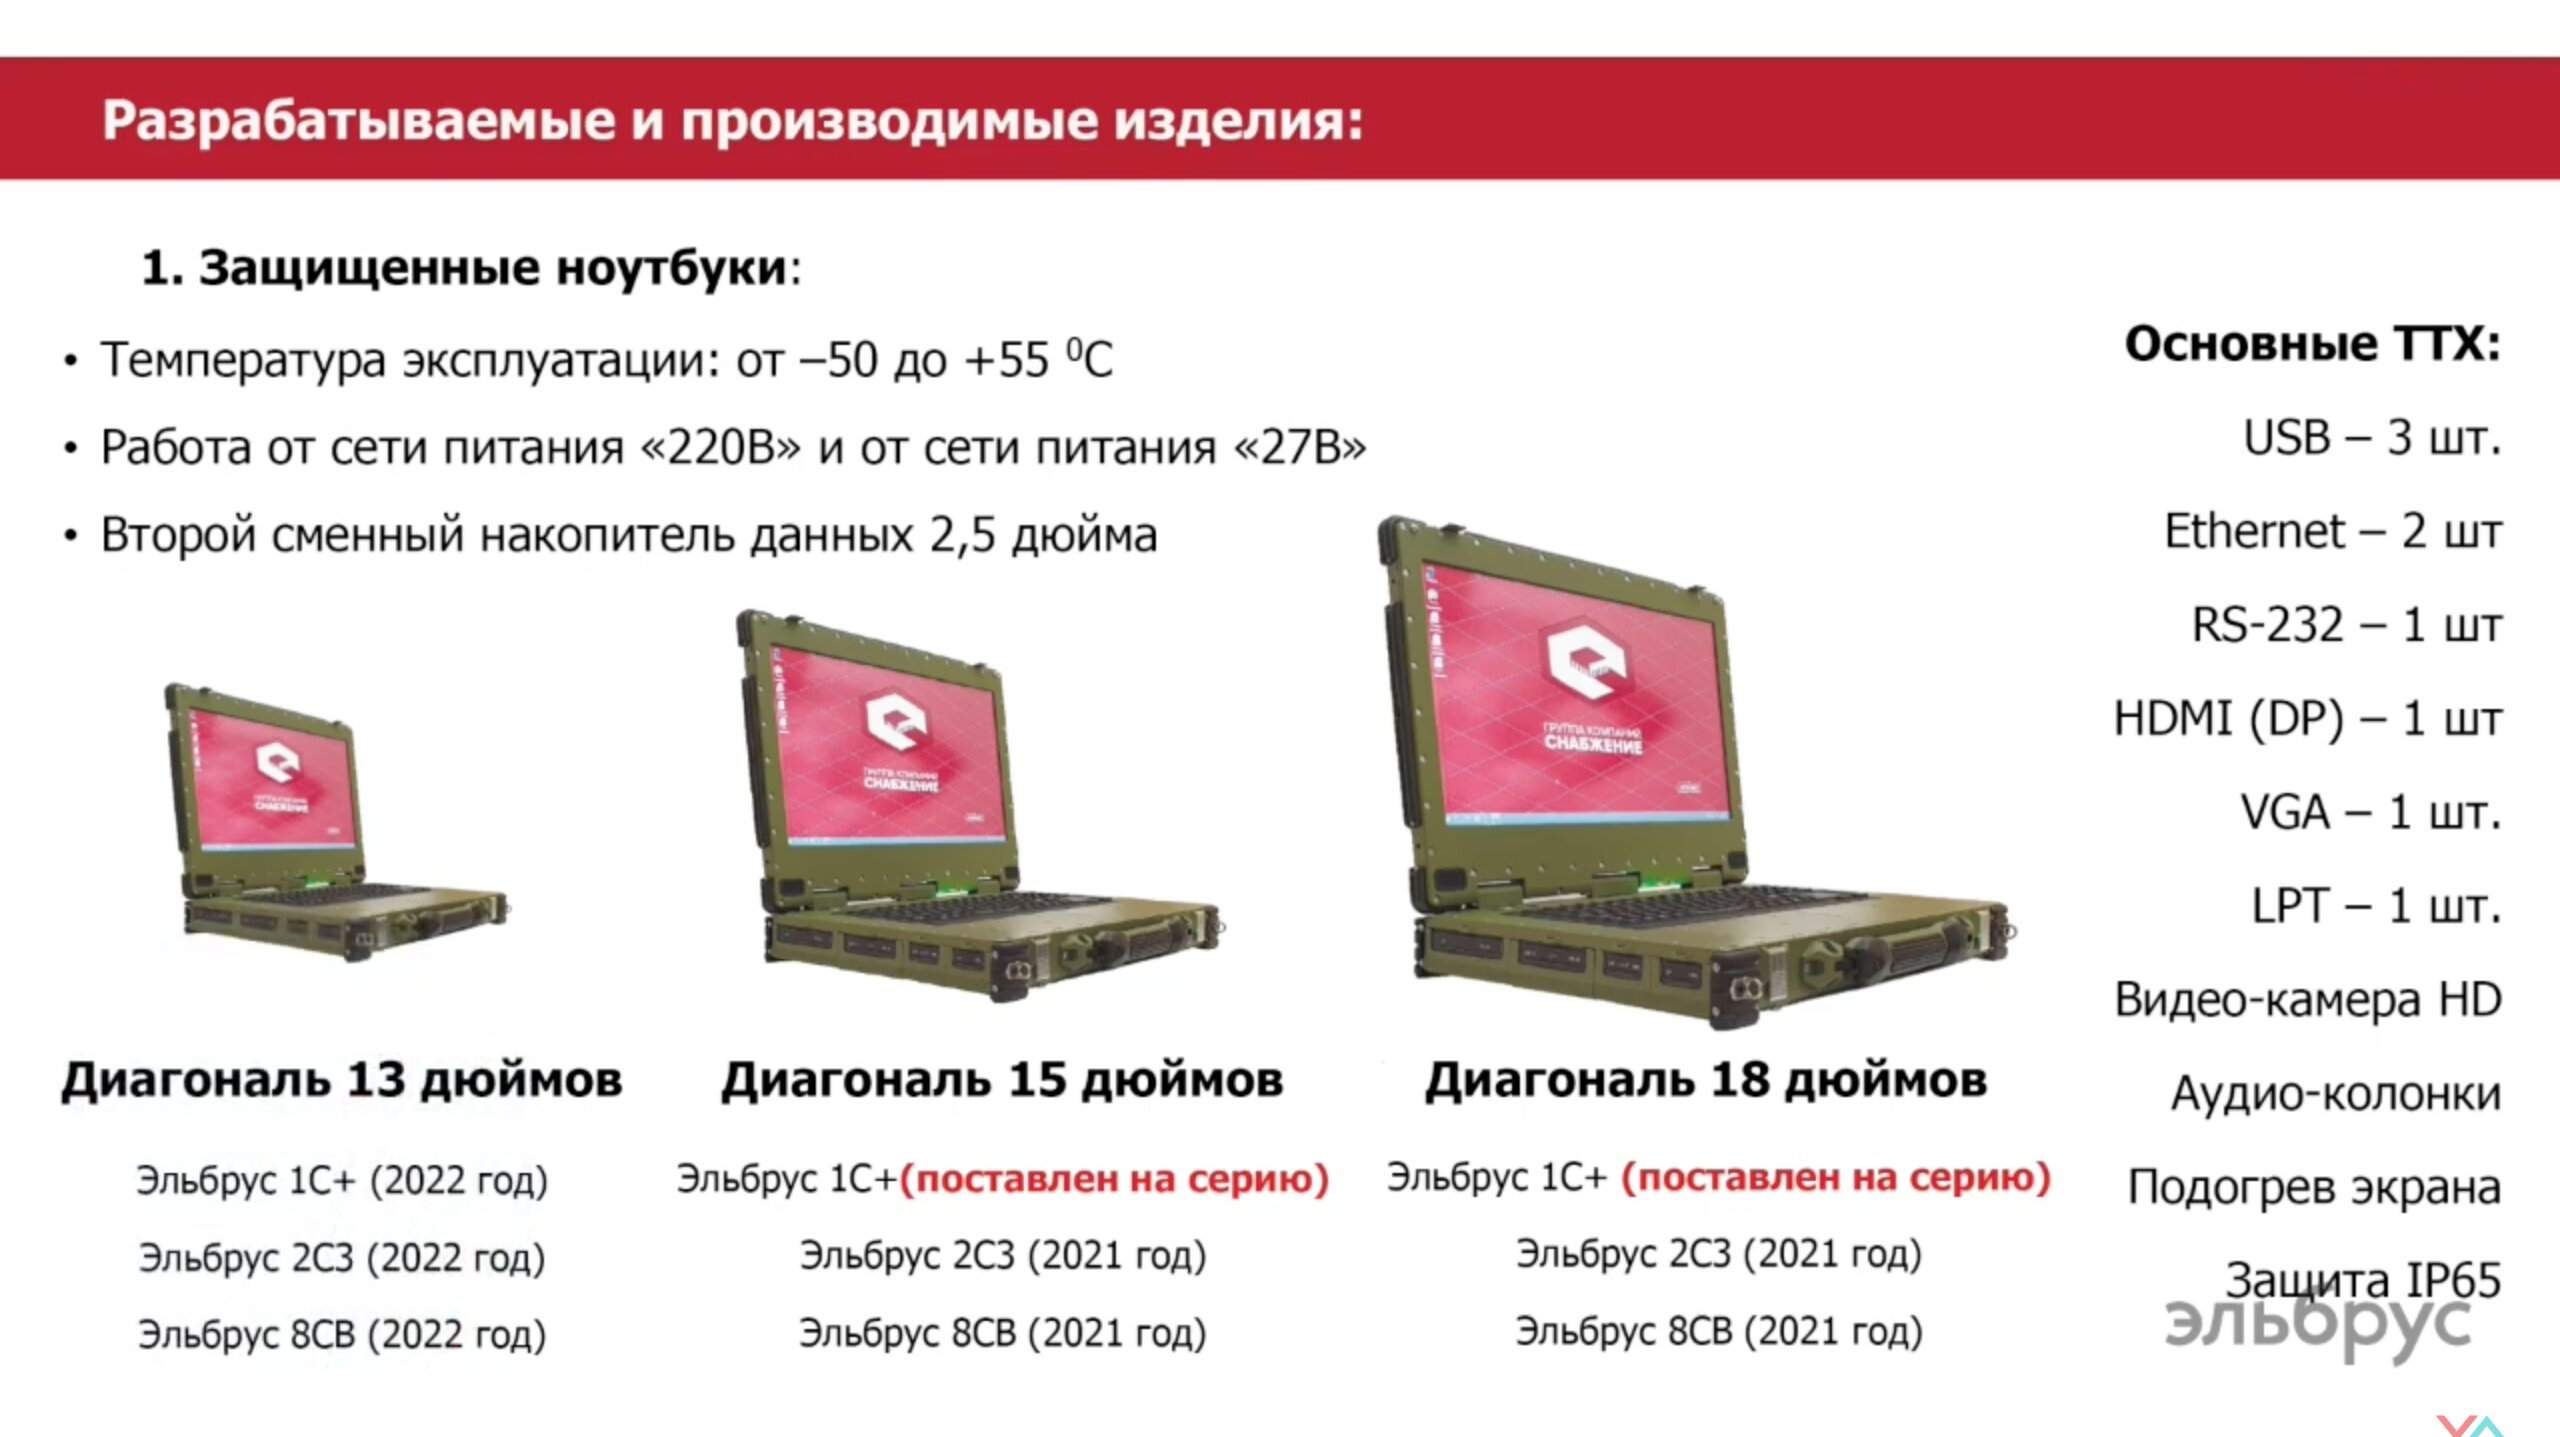 Российские Ноутбуки с процессором Эльбрус 2с3